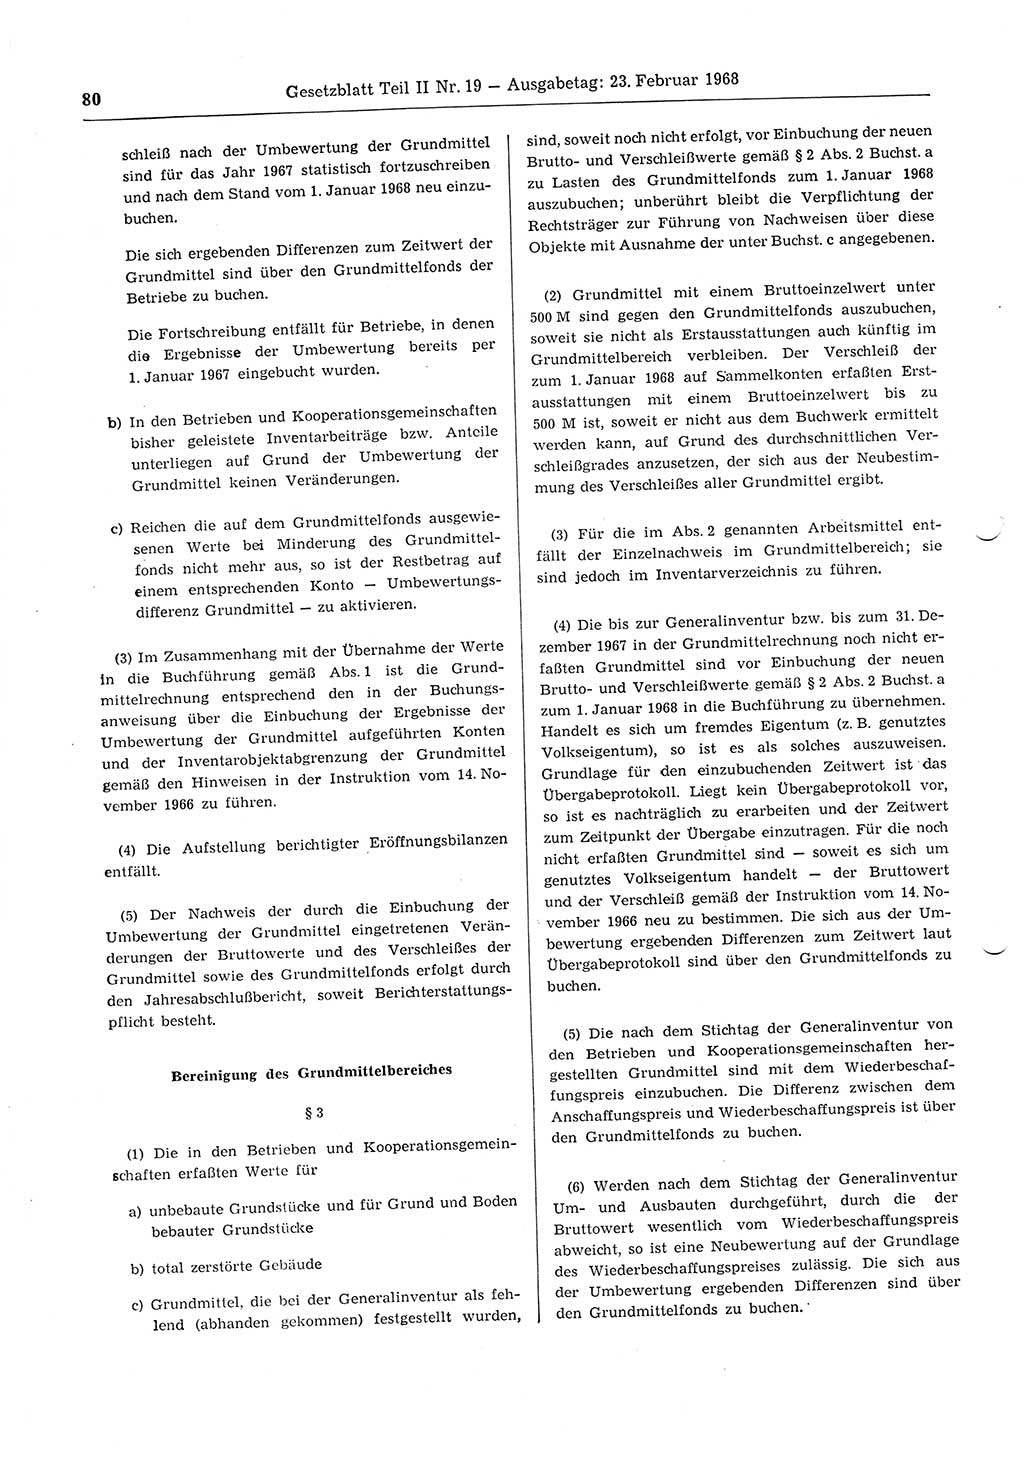 Gesetzblatt (GBl.) der Deutschen Demokratischen Republik (DDR) Teil ⅠⅠ 1968, Seite 80 (GBl. DDR ⅠⅠ 1968, S. 80)